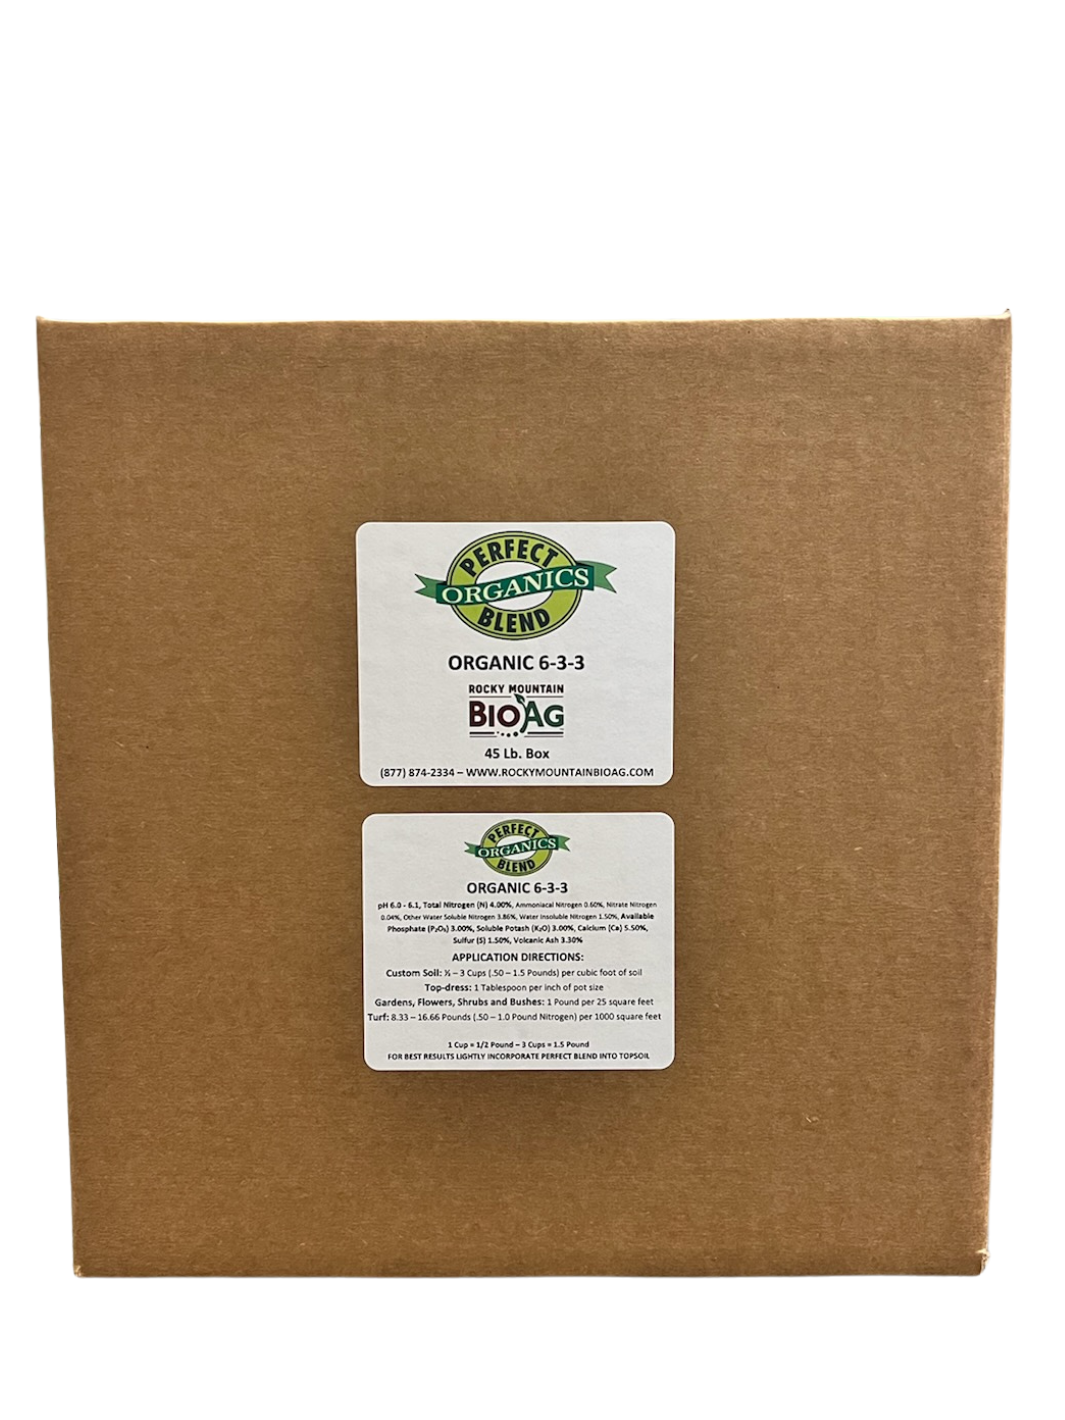 Perfect Blend 6-3-3 Organic Fertilizer in 45 pound box